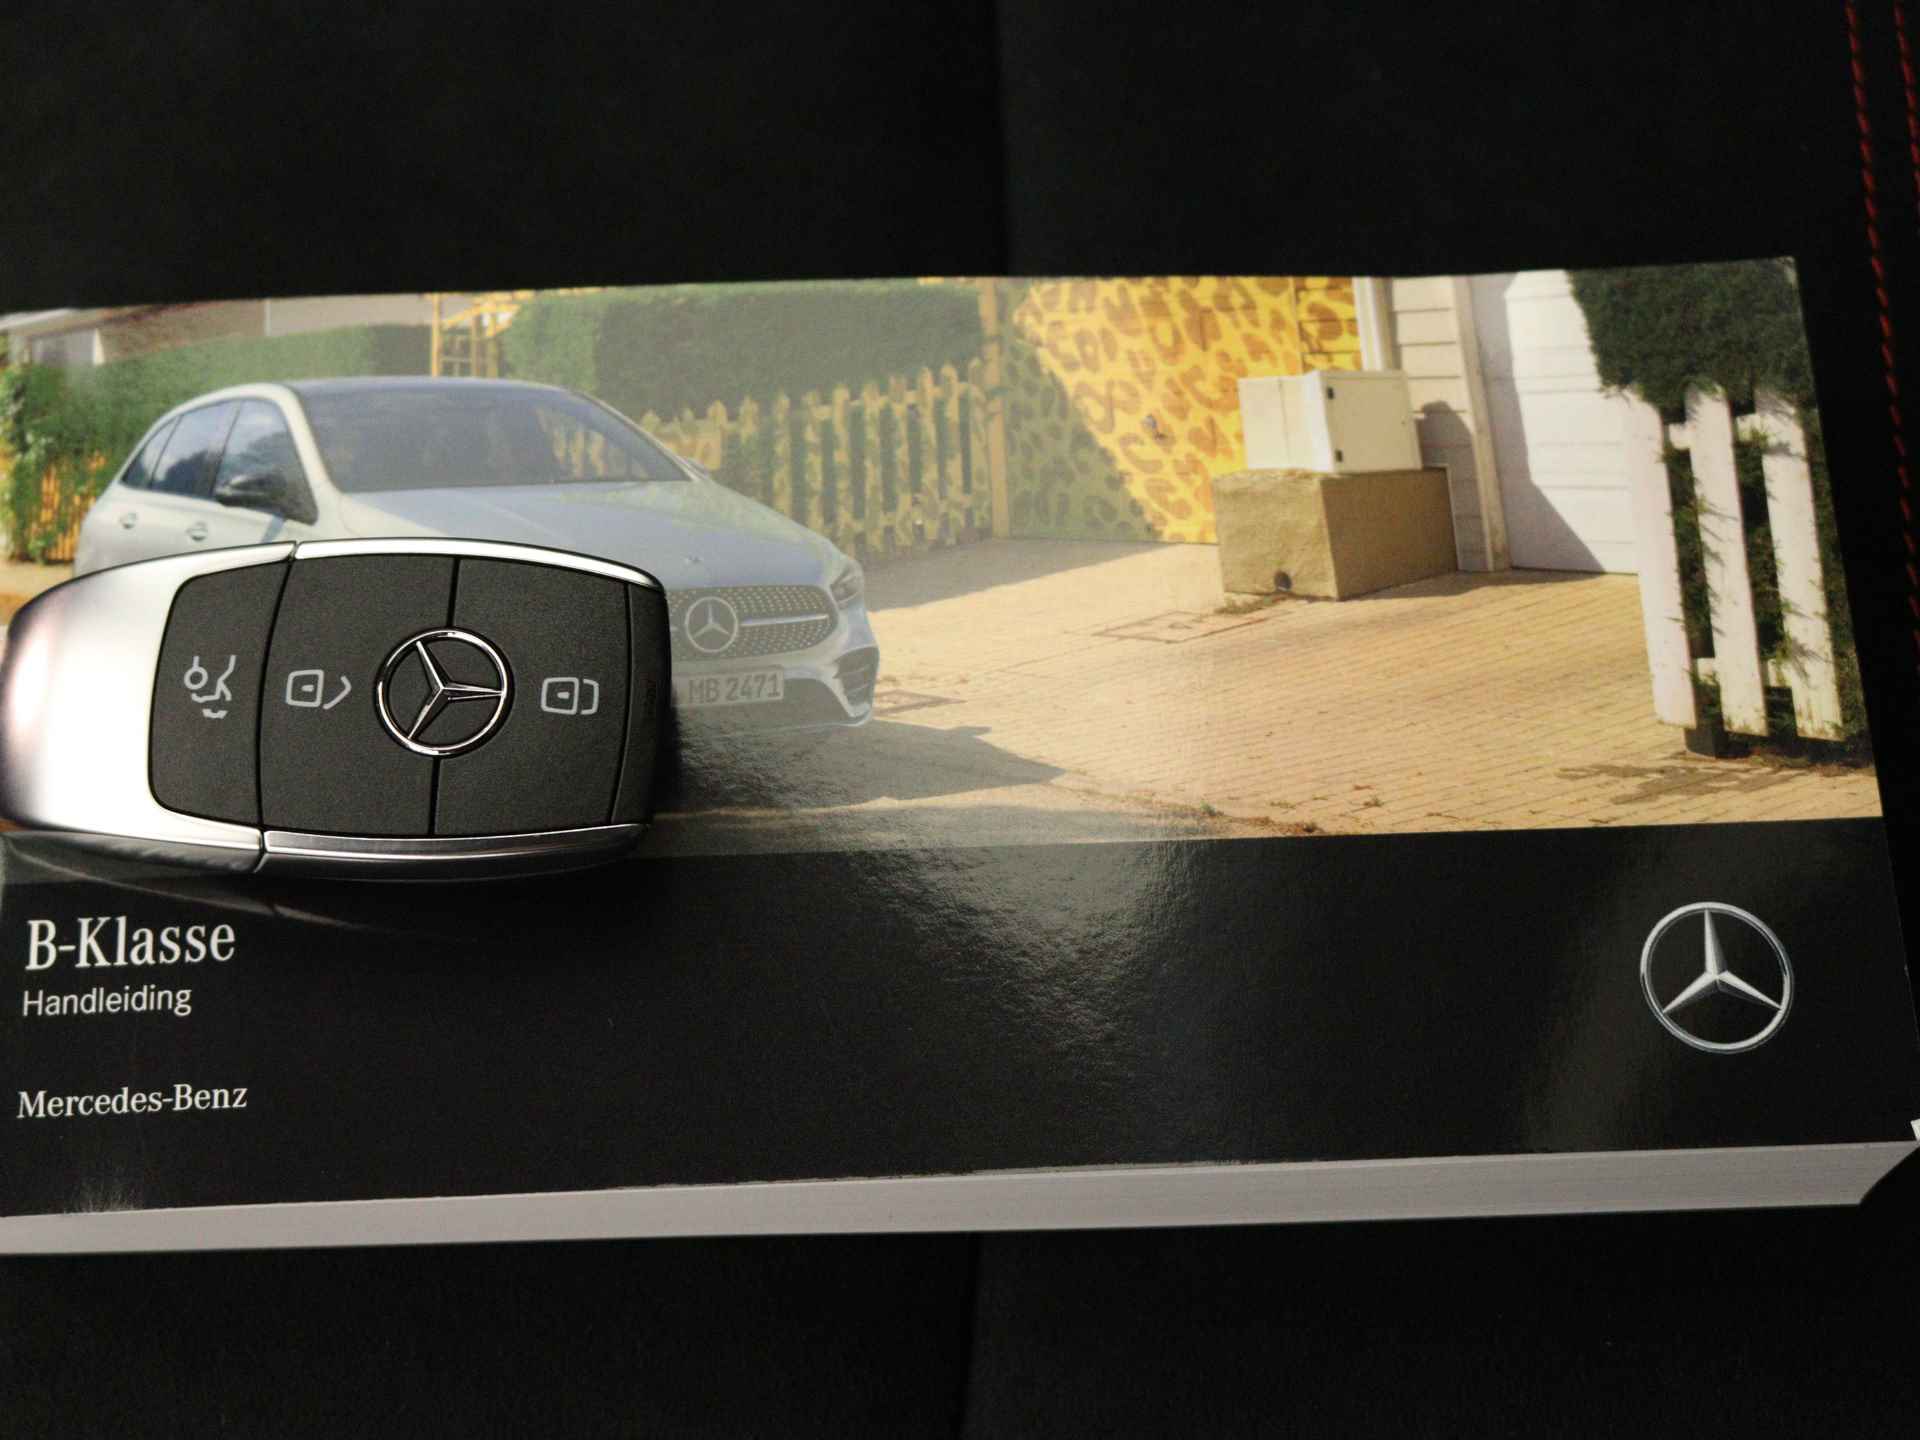 Mercedes-Benz B-Klasse 180 AMG Line | Premium Plus pakket | Nightpakket | Smartphone integratiepakket | Inclusief 24 maanden Mercedes-Benz Certified garantie voor Europa. - 11/37